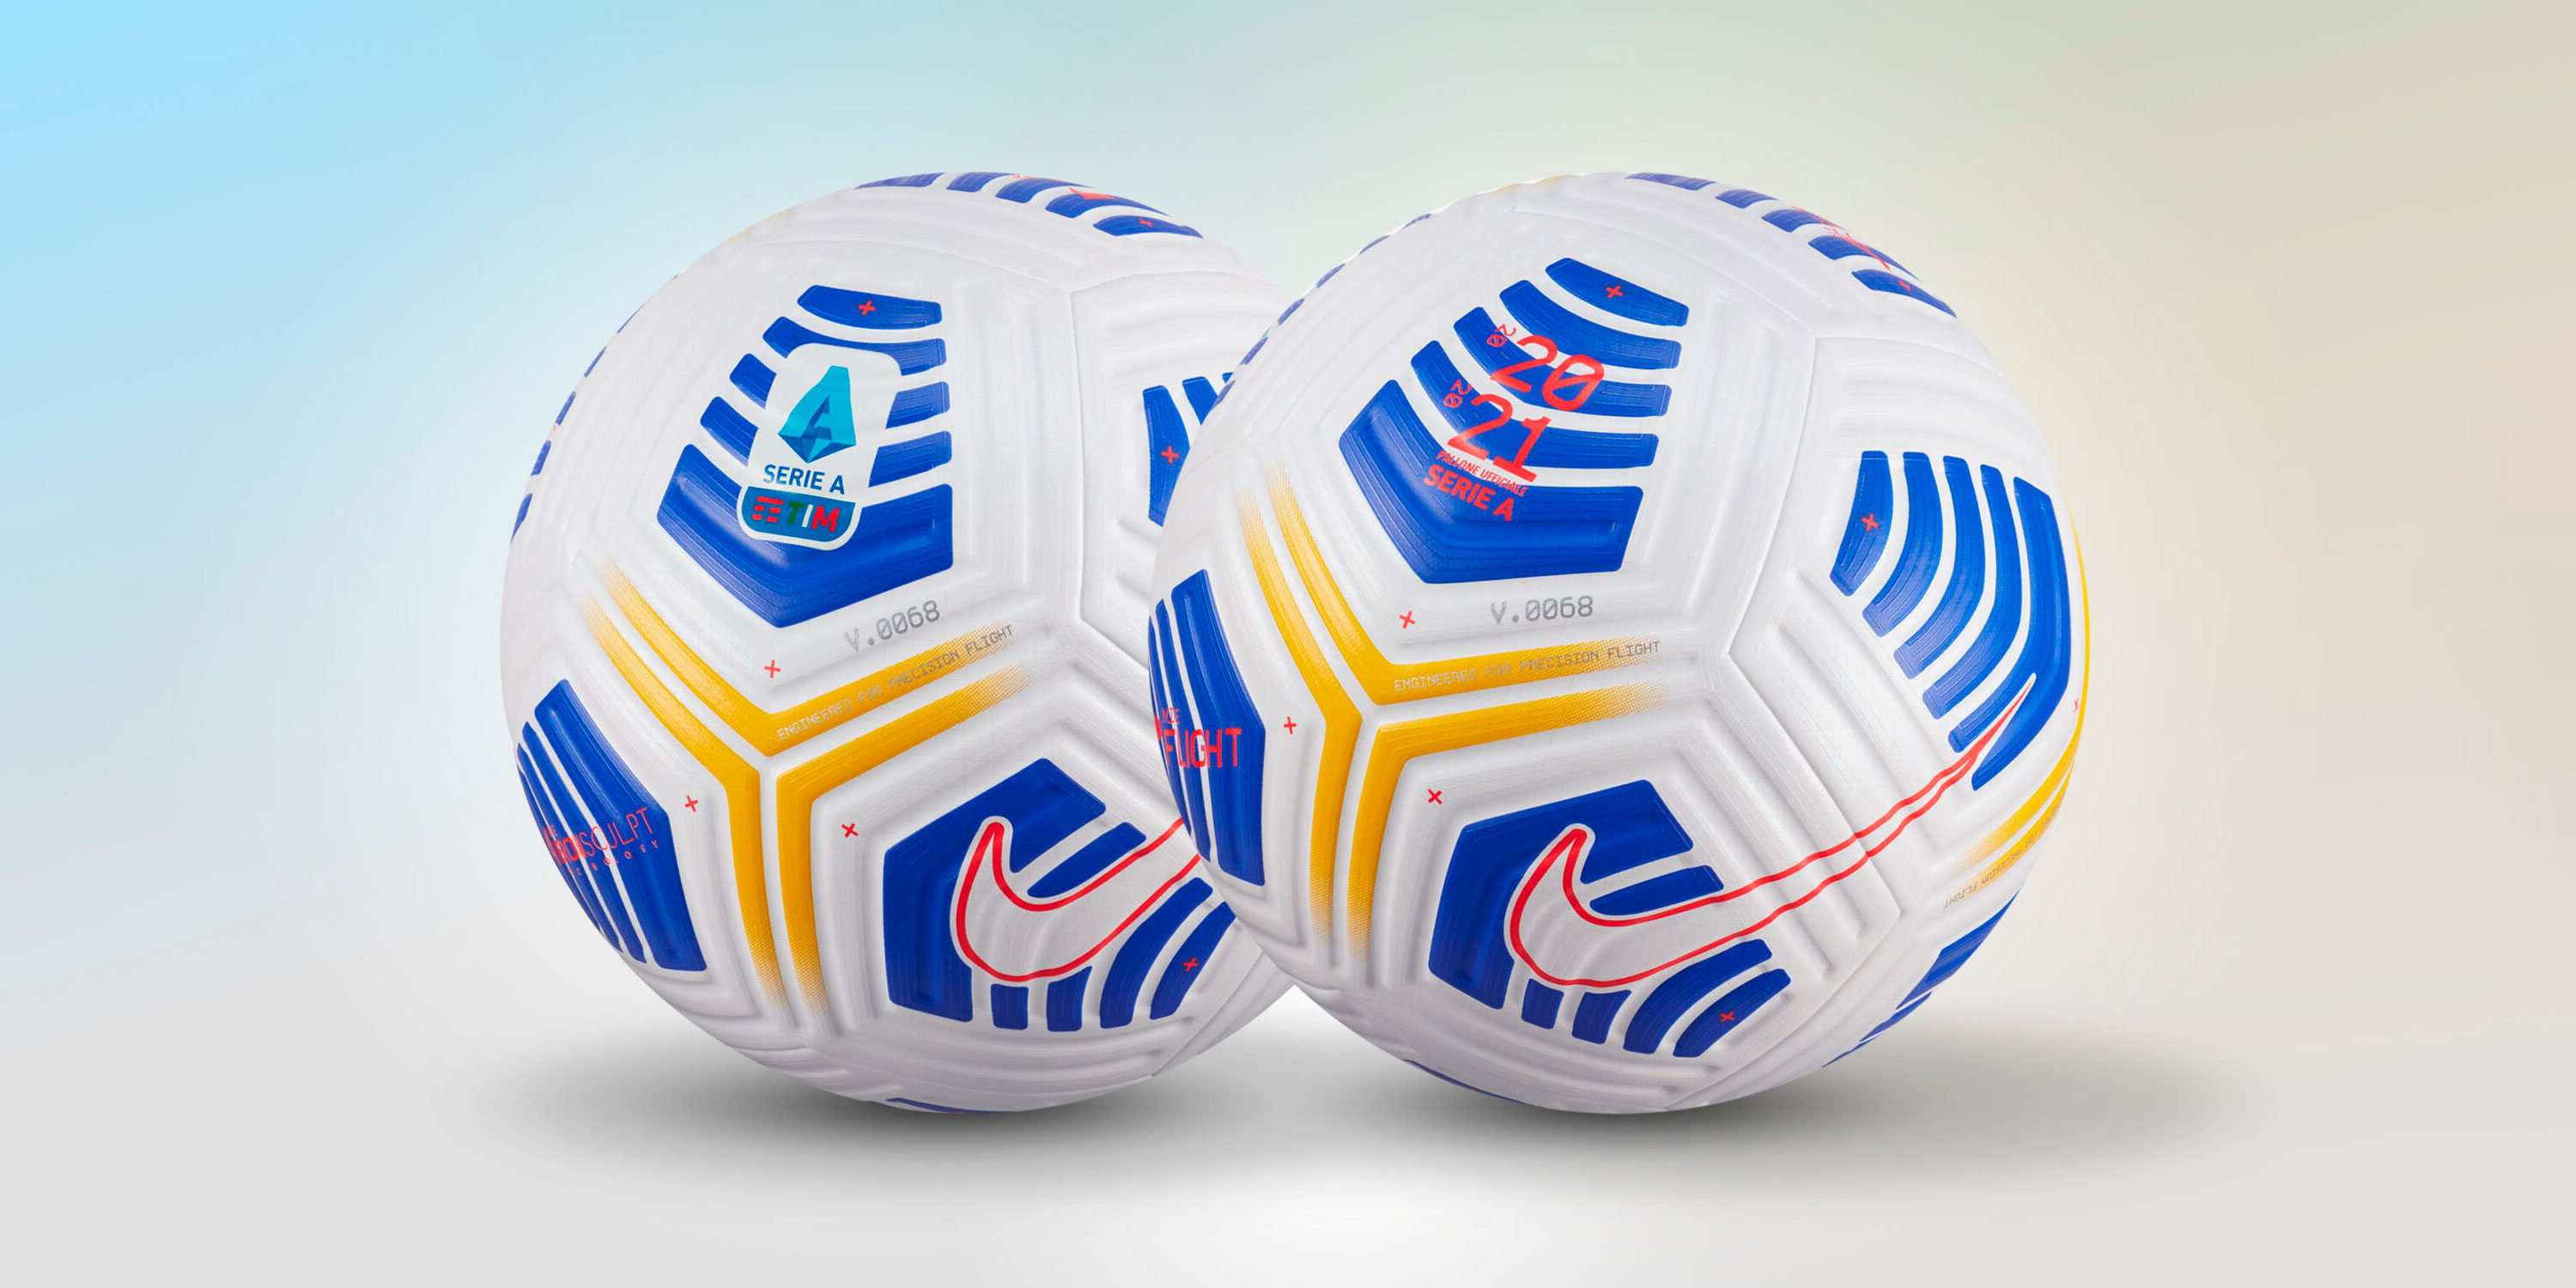 Презентация футбольного мяча Nike для Серии А 2020/21